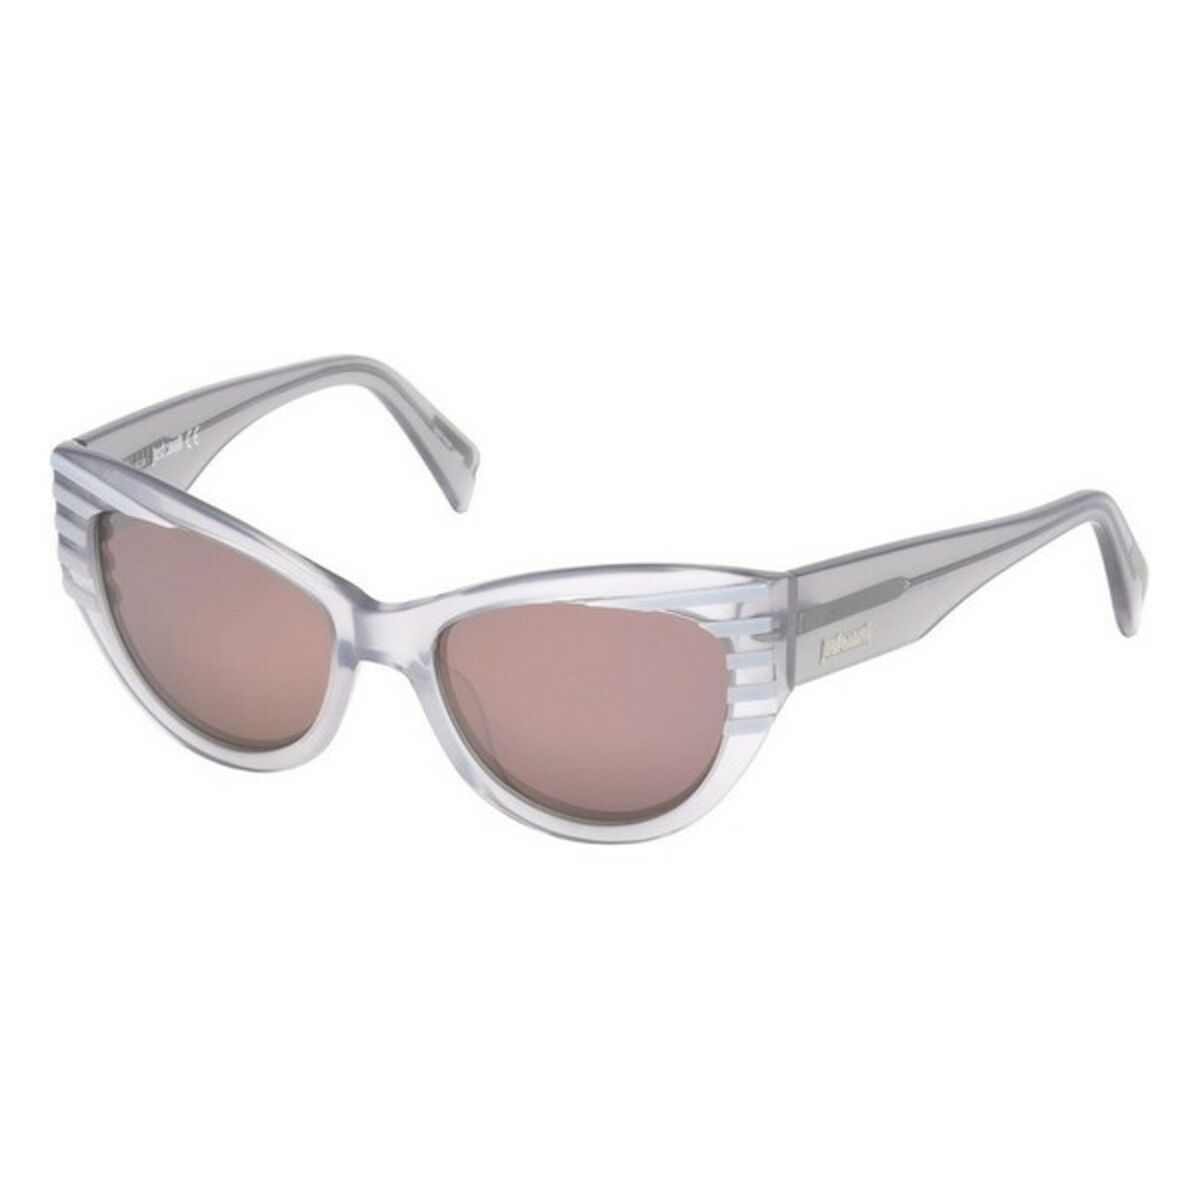 Ladies' Sunglasses Just Cavalli JC790S